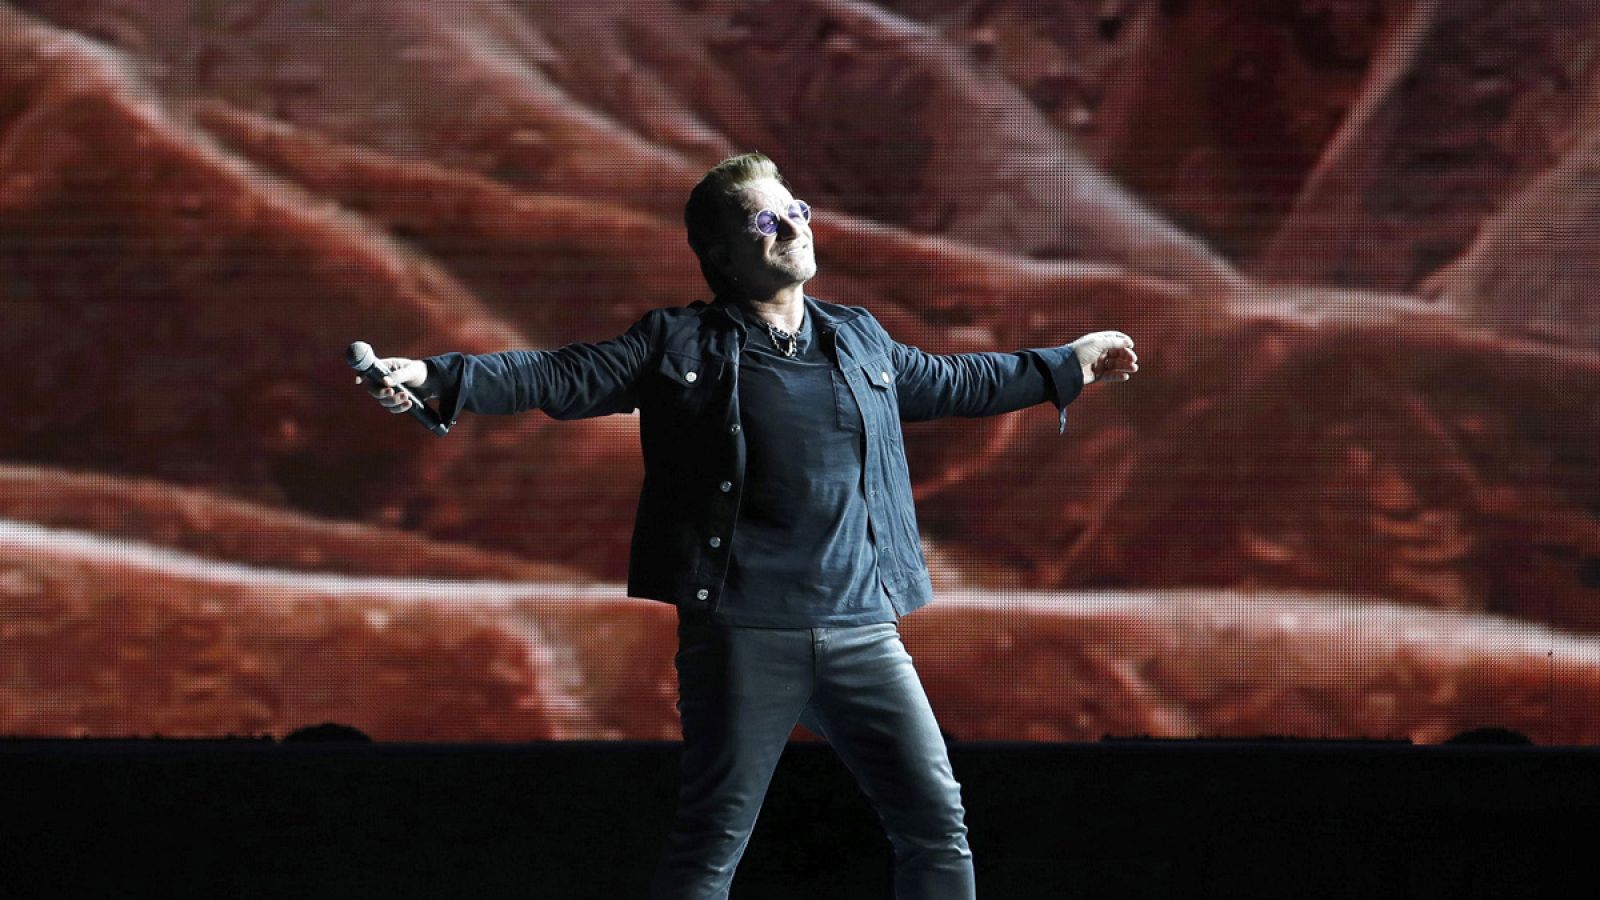 Es el único concierto en España de su gira mundial "U2: The Joshua Tree Tour 2017".